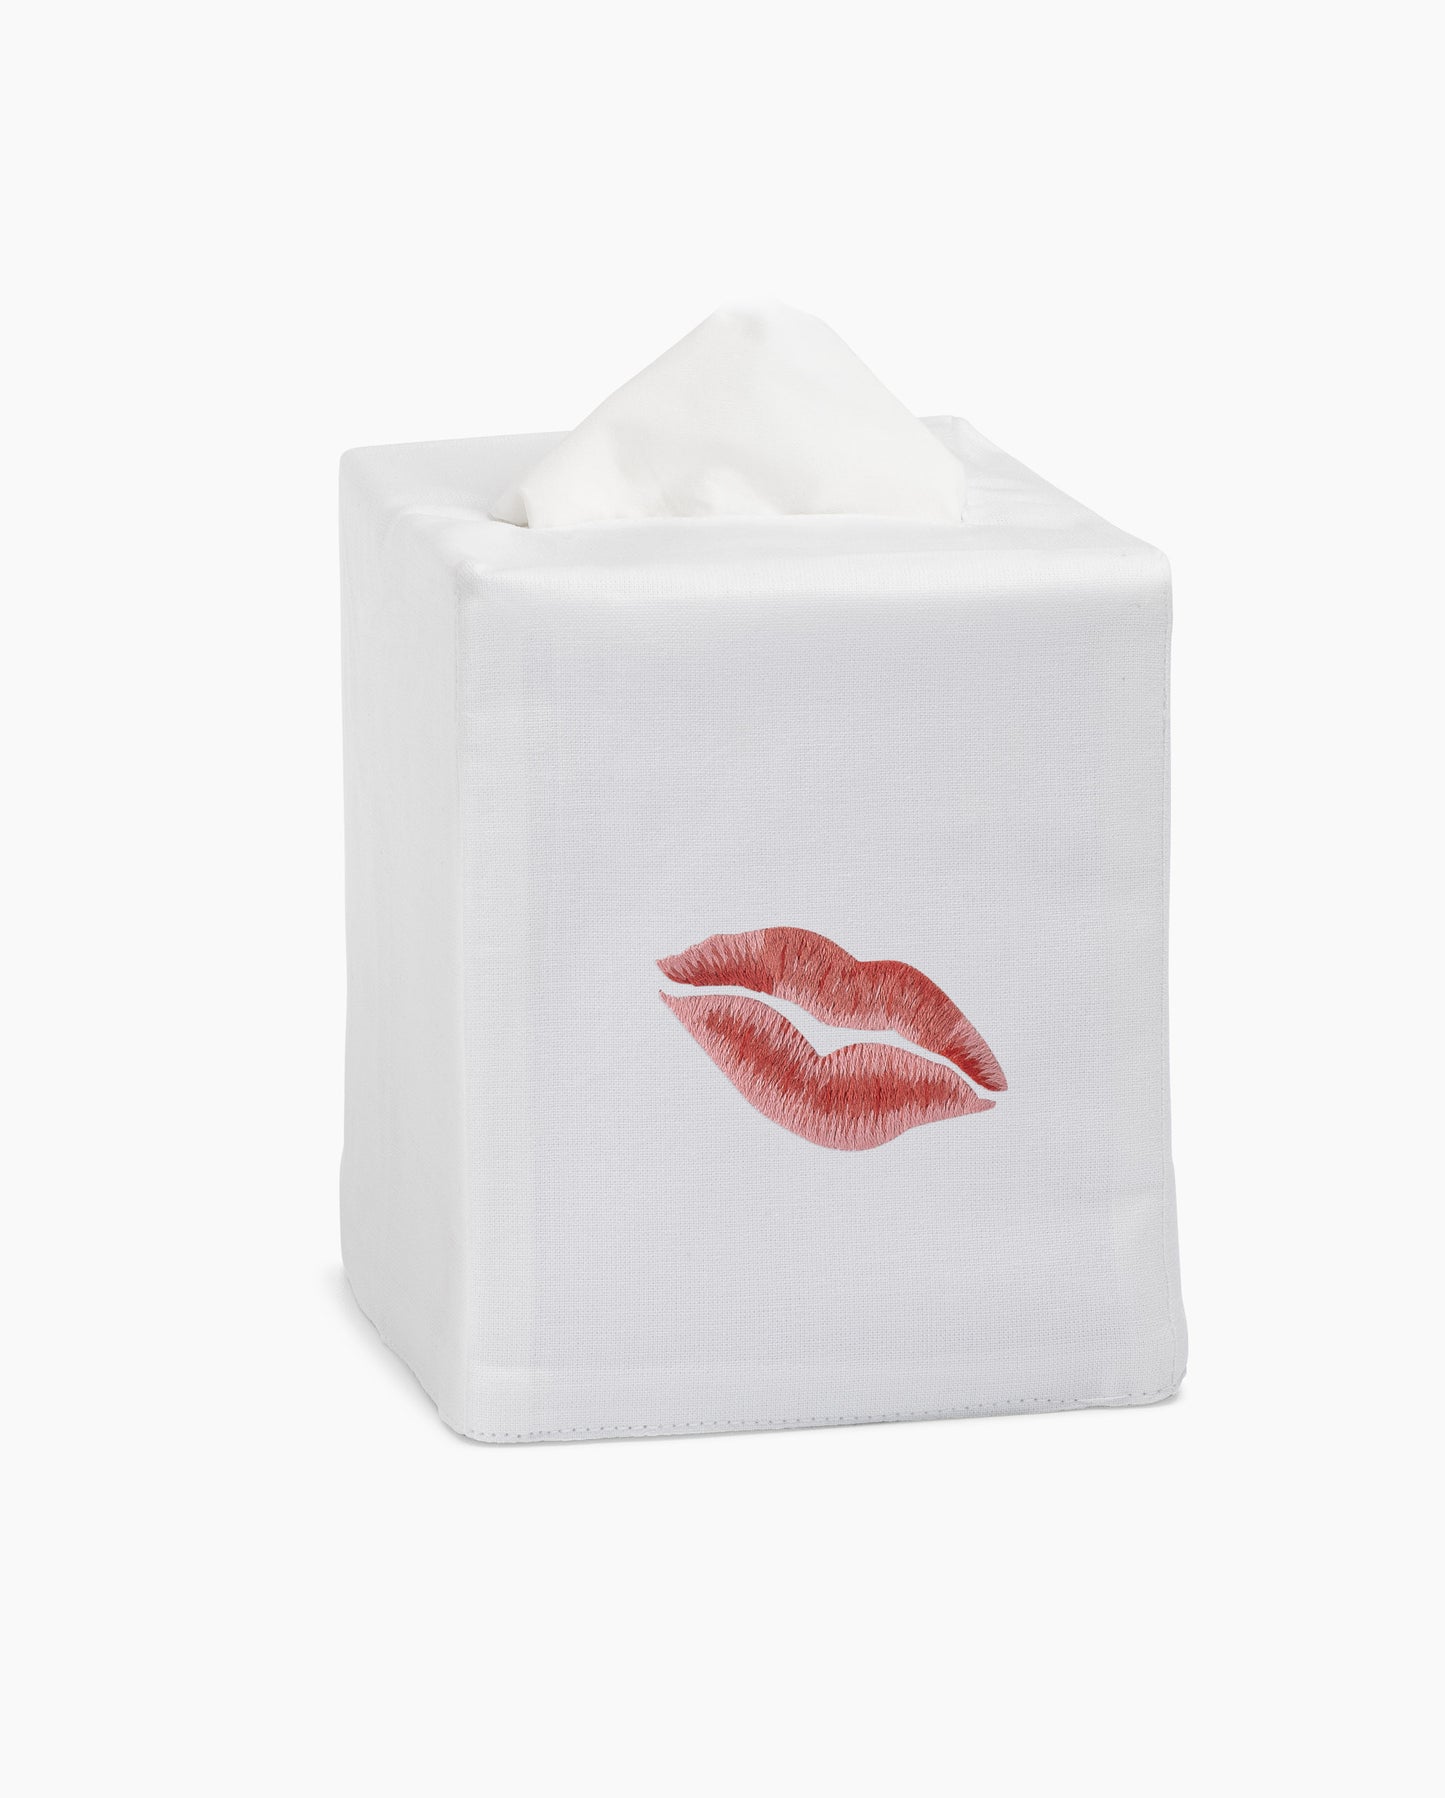 Kiss Tissue Box Cover